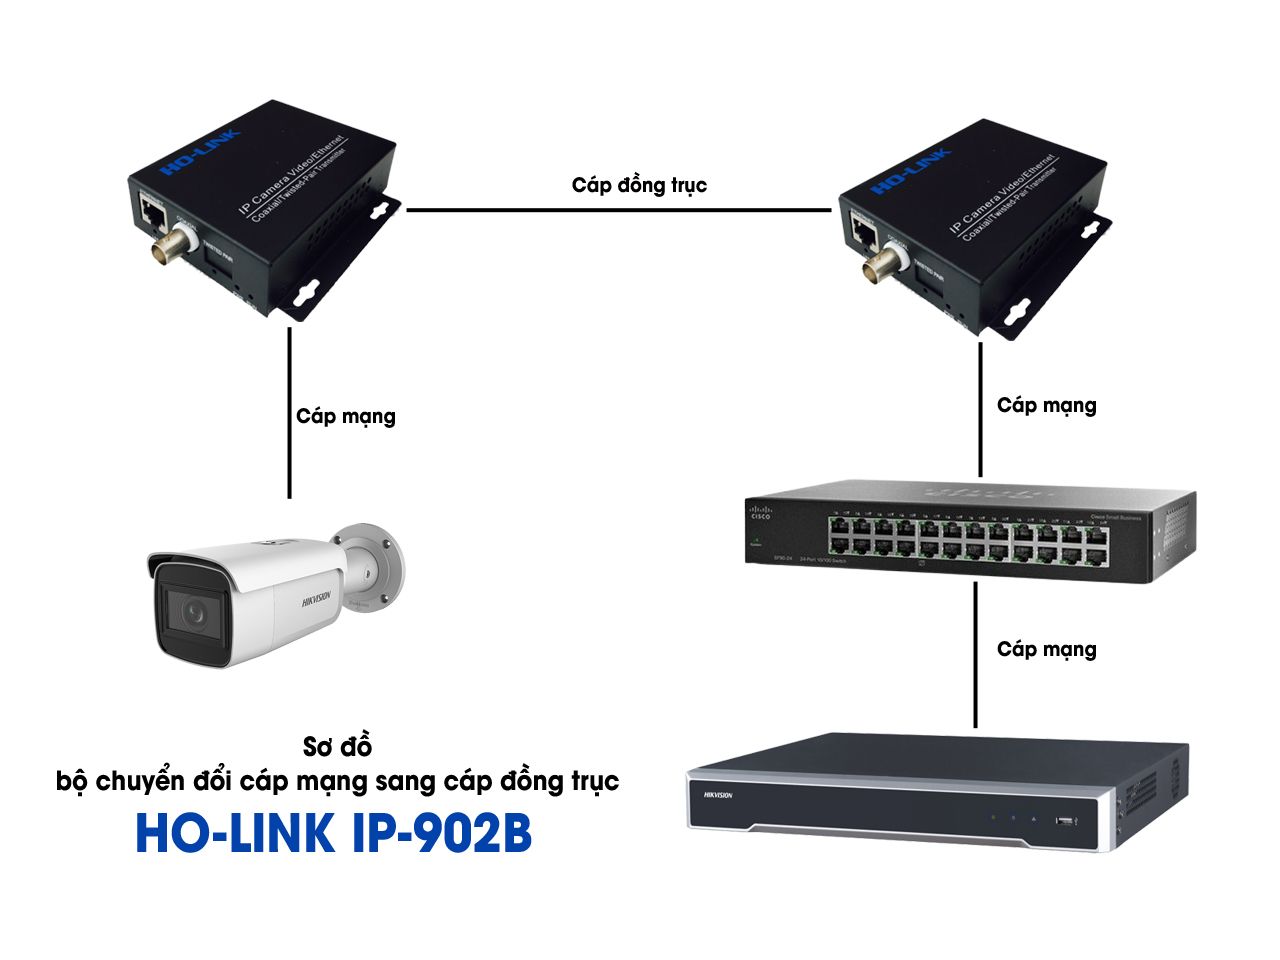 sơ đồ bộ chuyển đổi cáp mạng sang cáp đồng trục Ho-link IP-902B